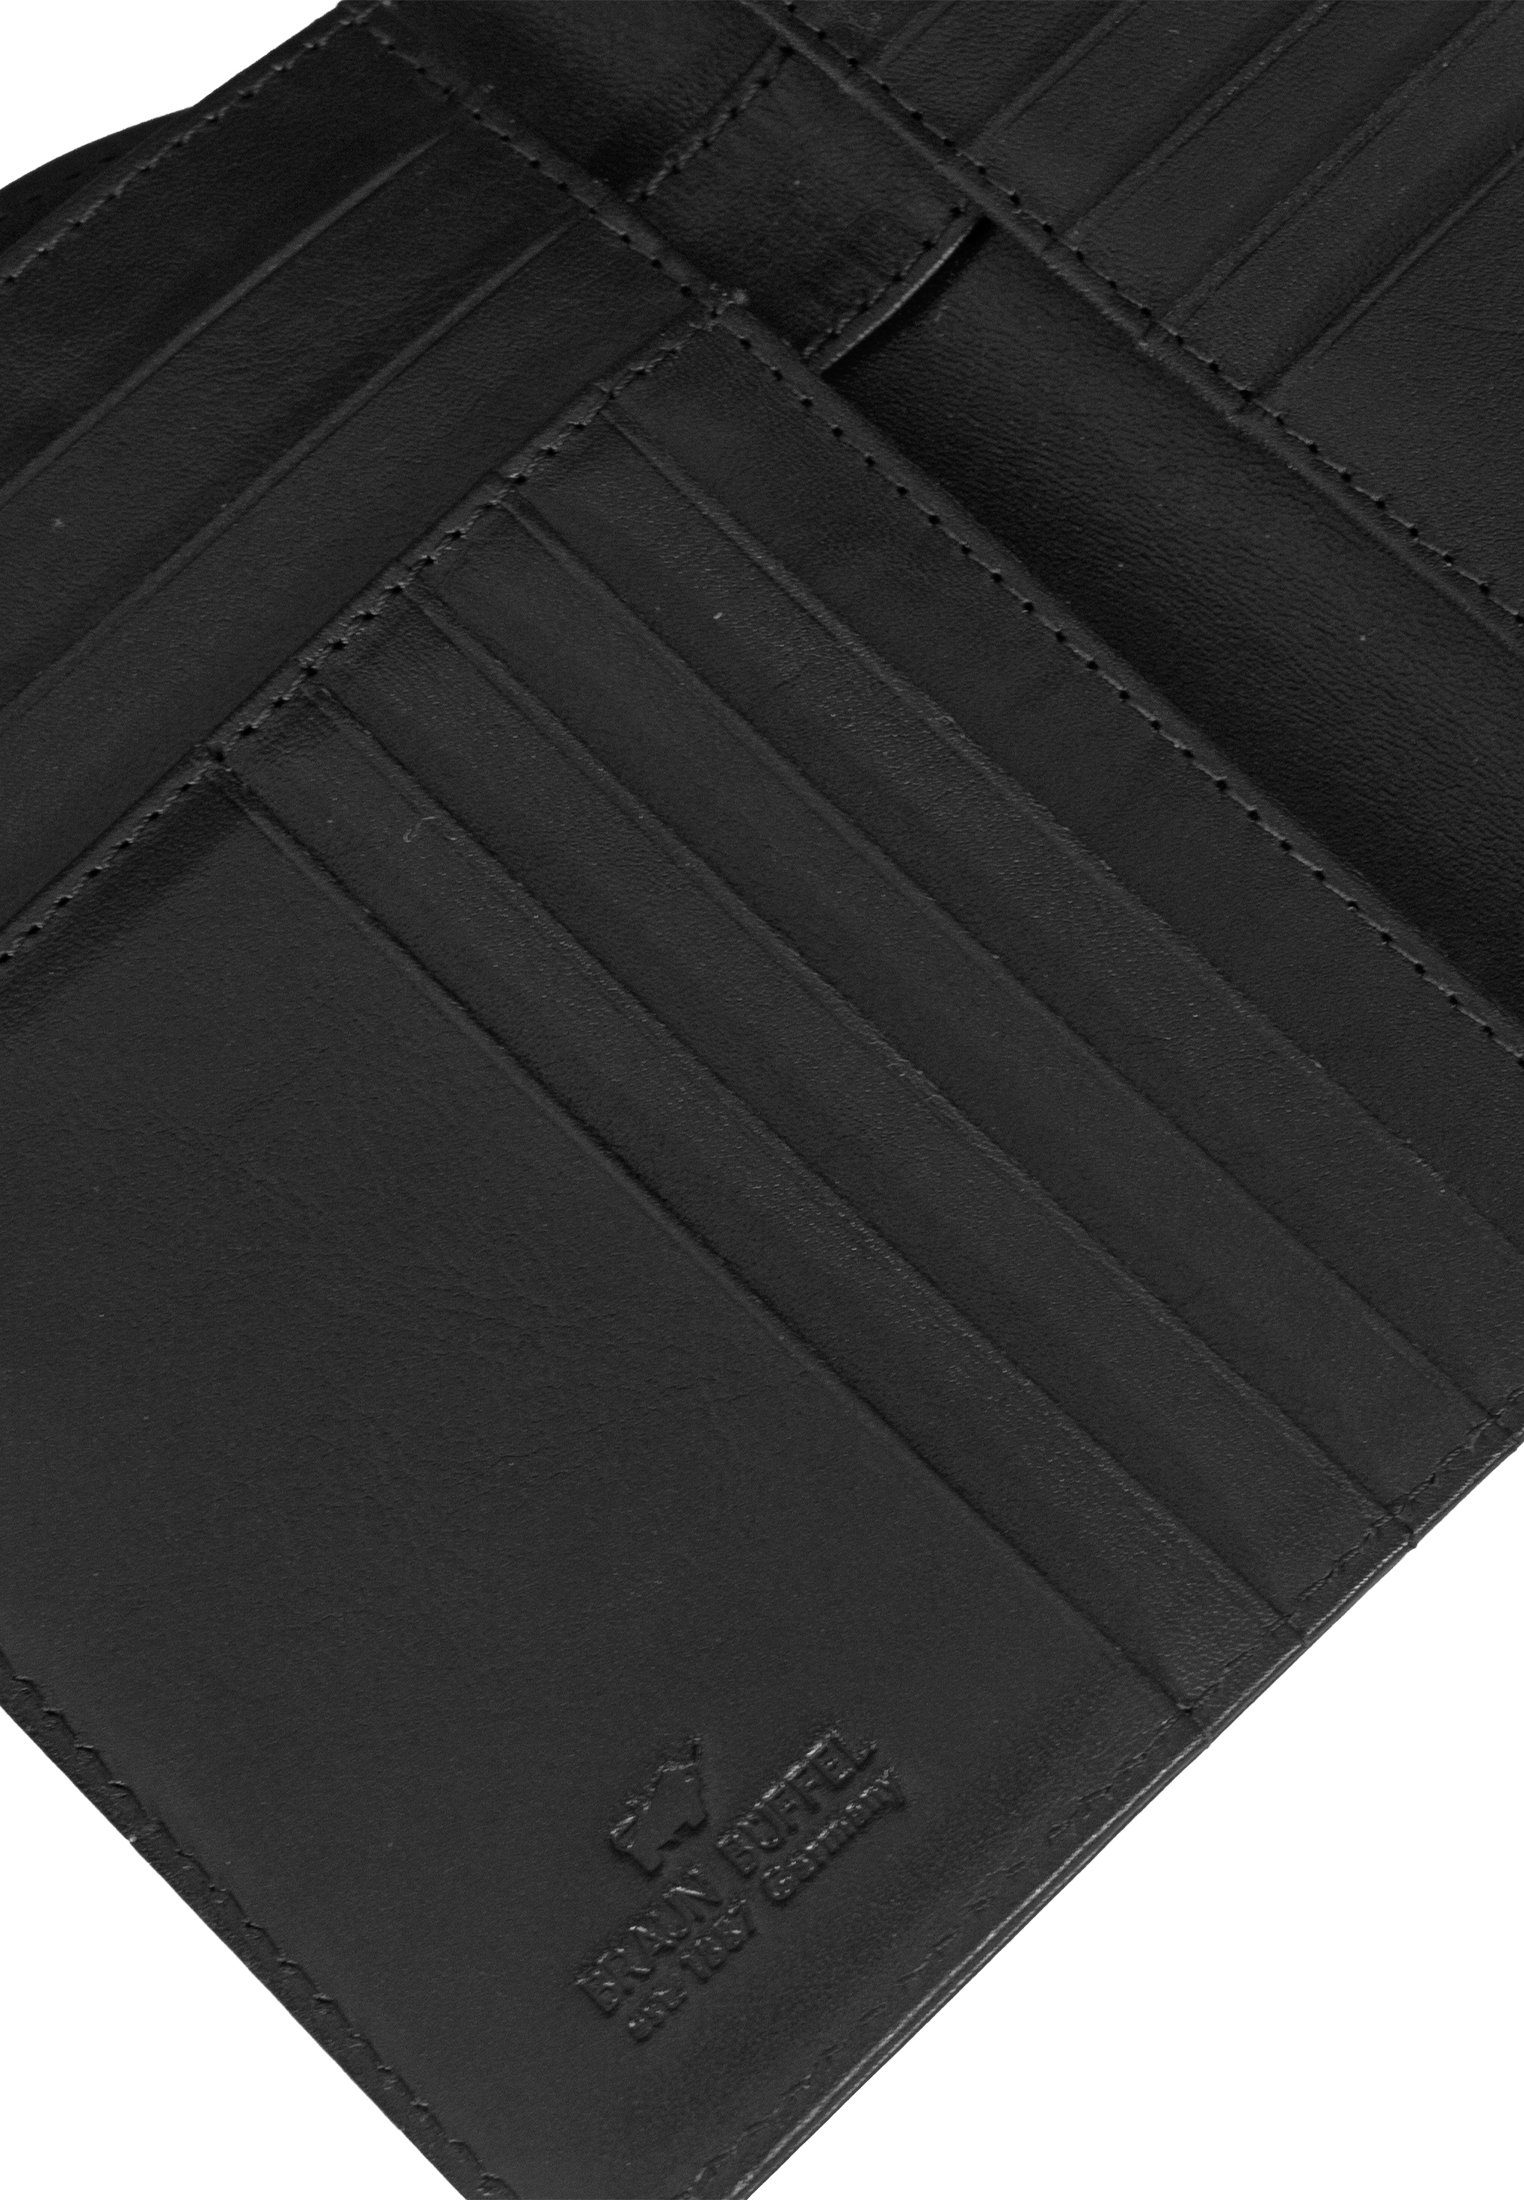 Braun Büffel Brieftasche COUNTRY schwarz mit Brieftasche, RFID Stiftehalter